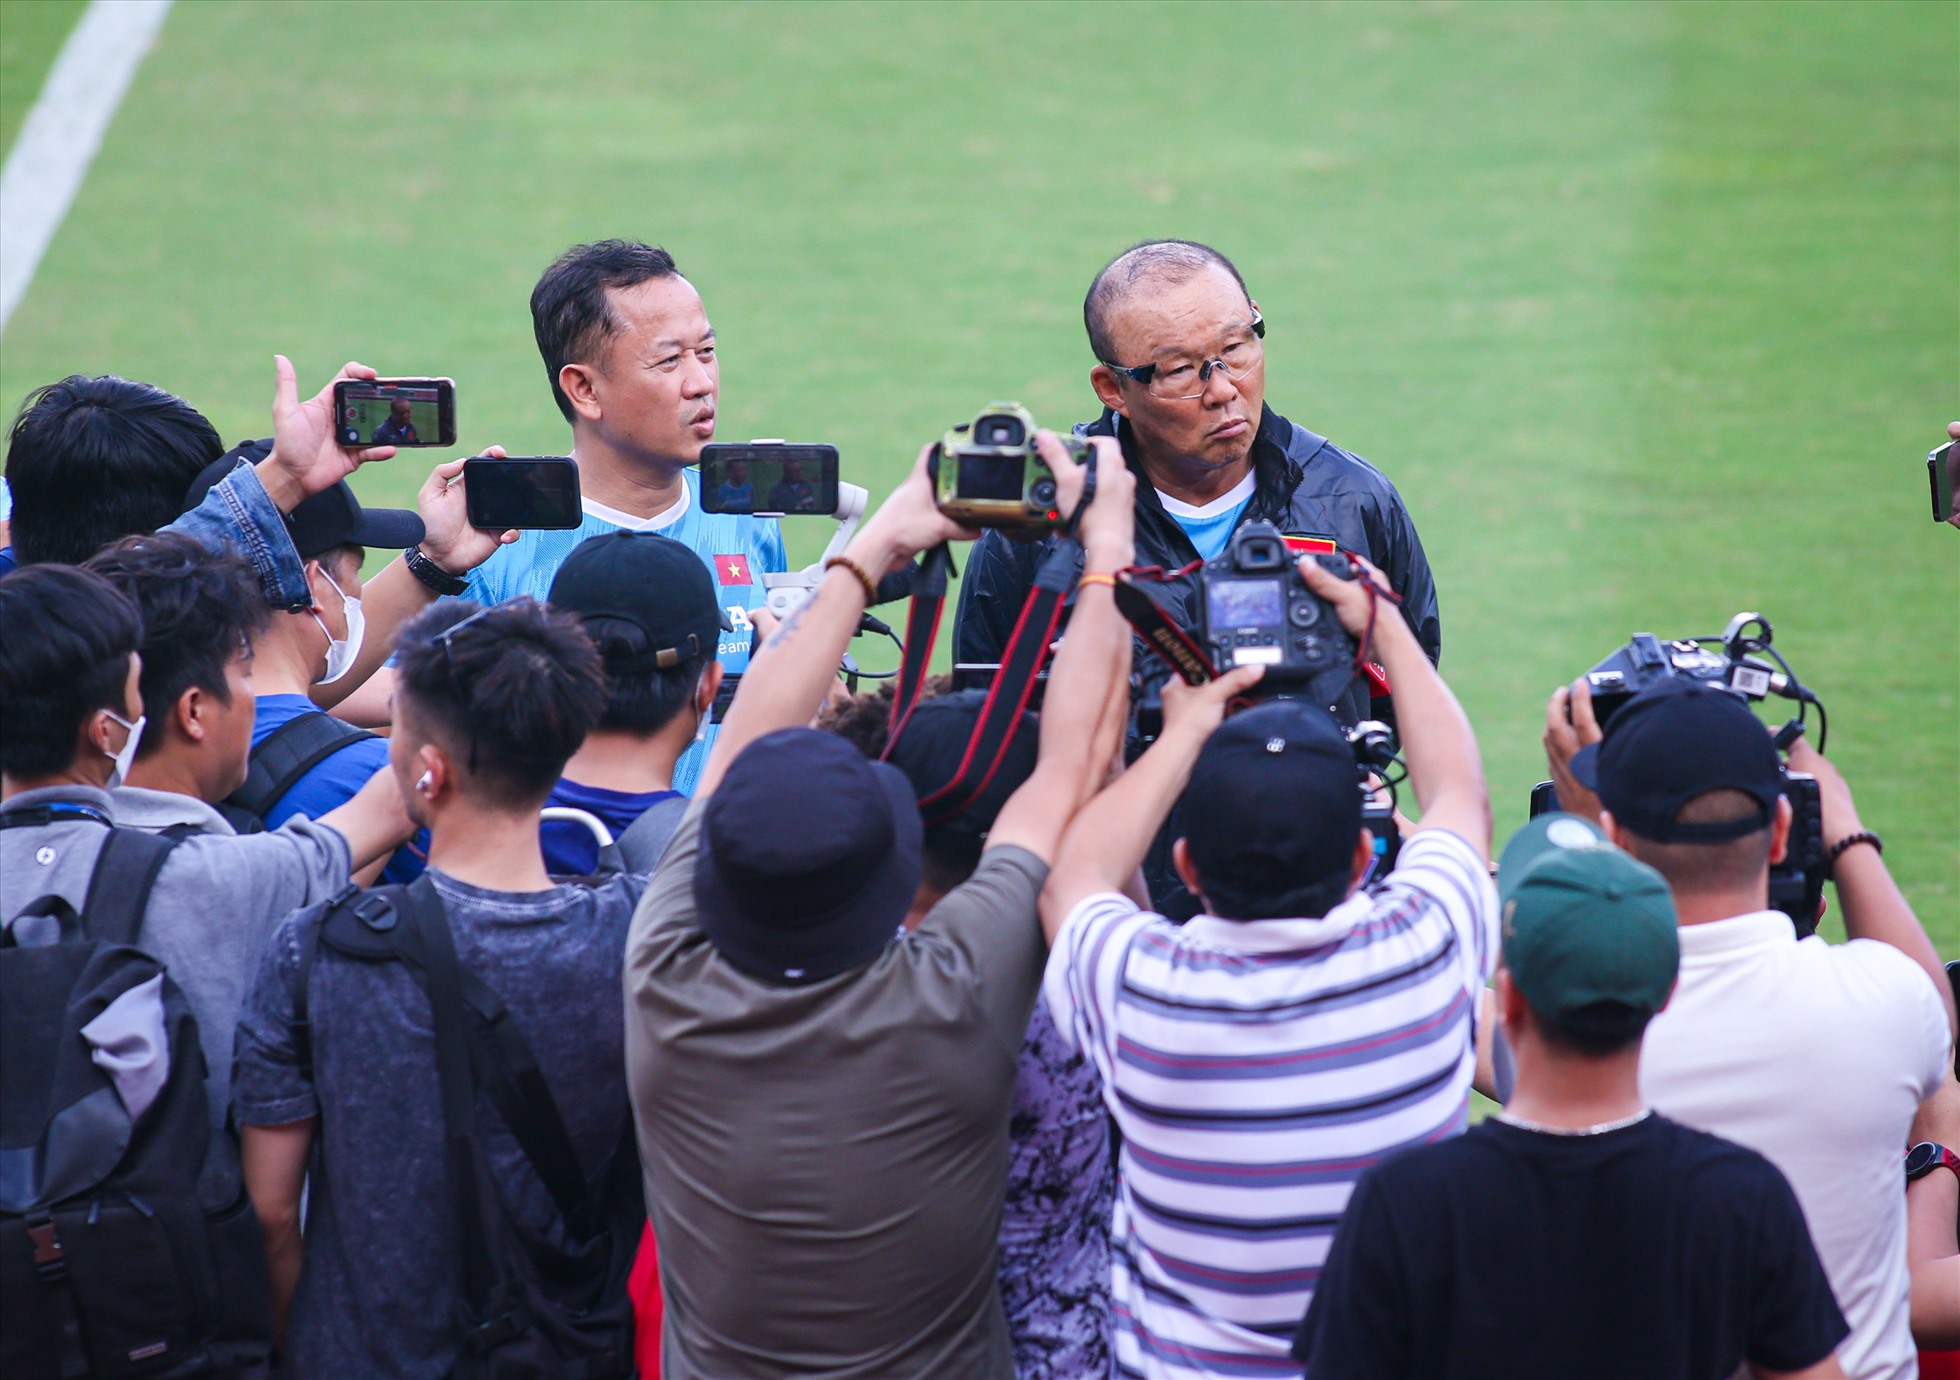 Trước khi bắt đầu buổi tập, huấn luyện viên Park Hang-seo đã có những chia sẻ với truyền thông về tình hình lực lượng cũng như mục tiêu của đội. Chiến lược gia người Hàn Quốc đặt mục tiêu giành chiến thắng trong cả 2 trận trước Singapore và Ấn Độ.